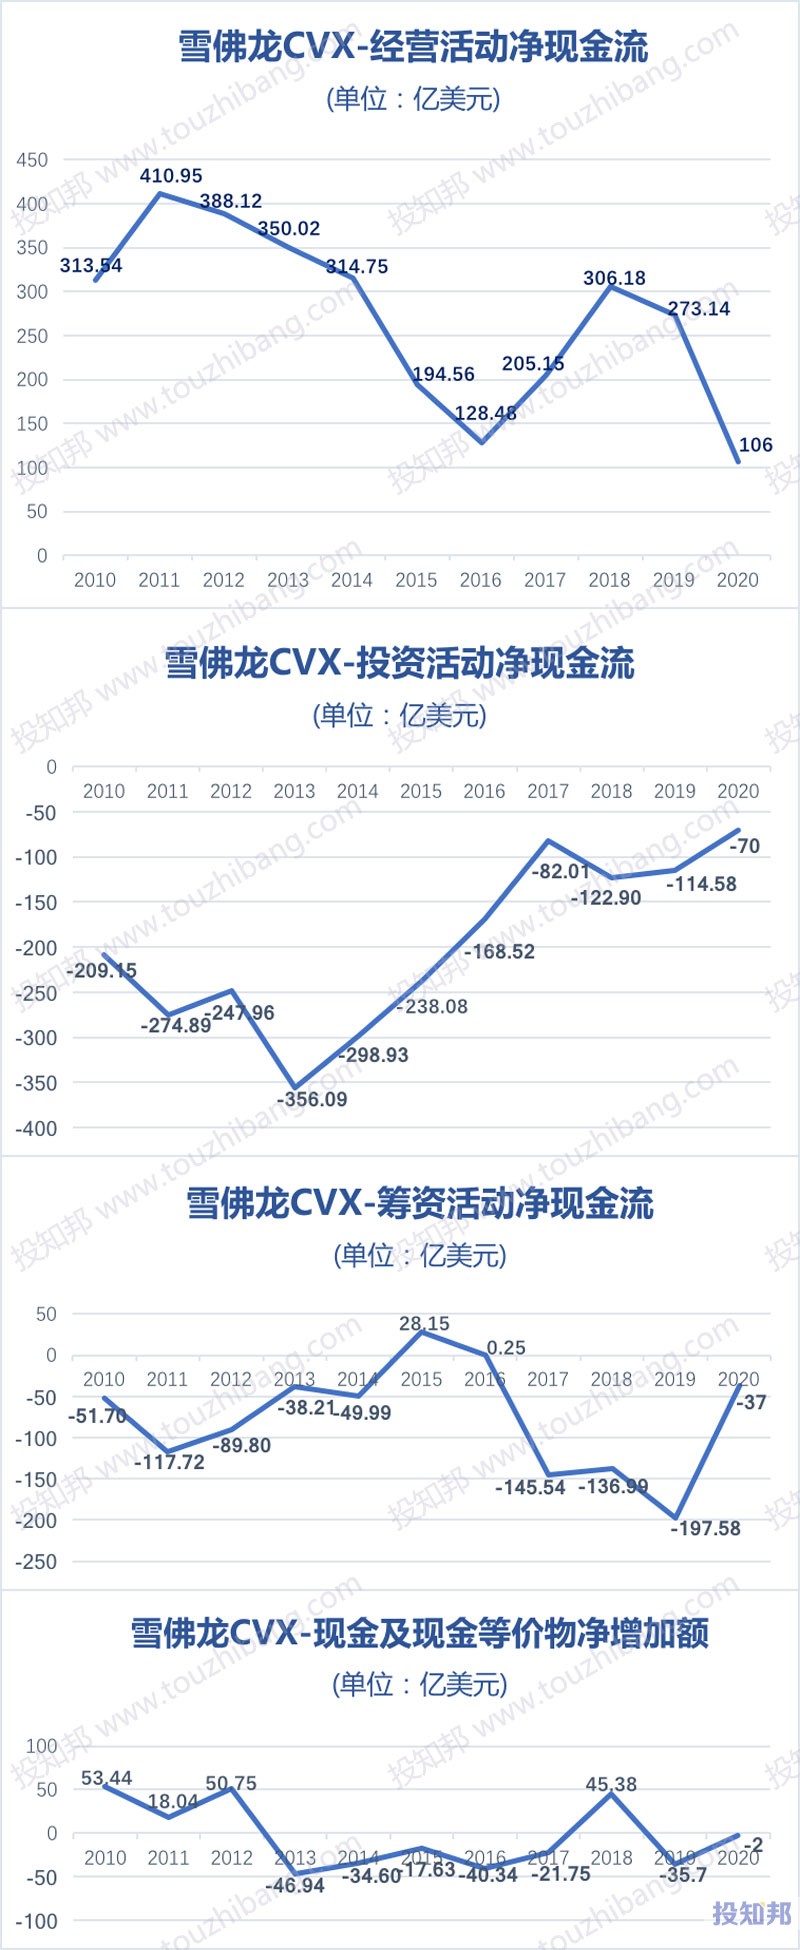 雪佛龙(CVX)财报数据图示(2010~2020年，更新)